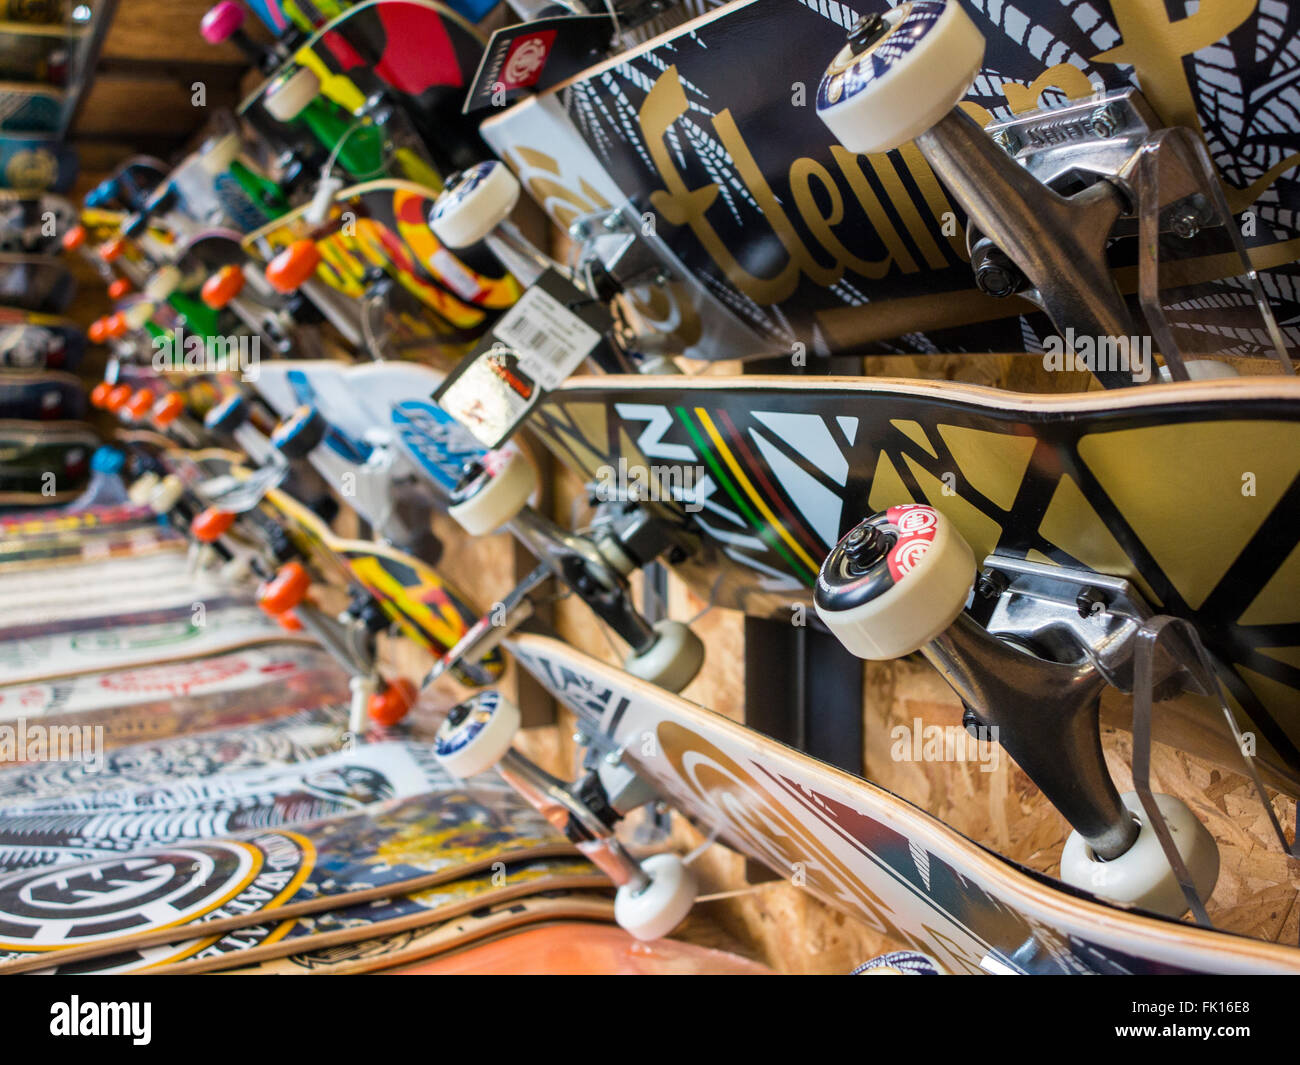 Skateboard shop Stock Photo